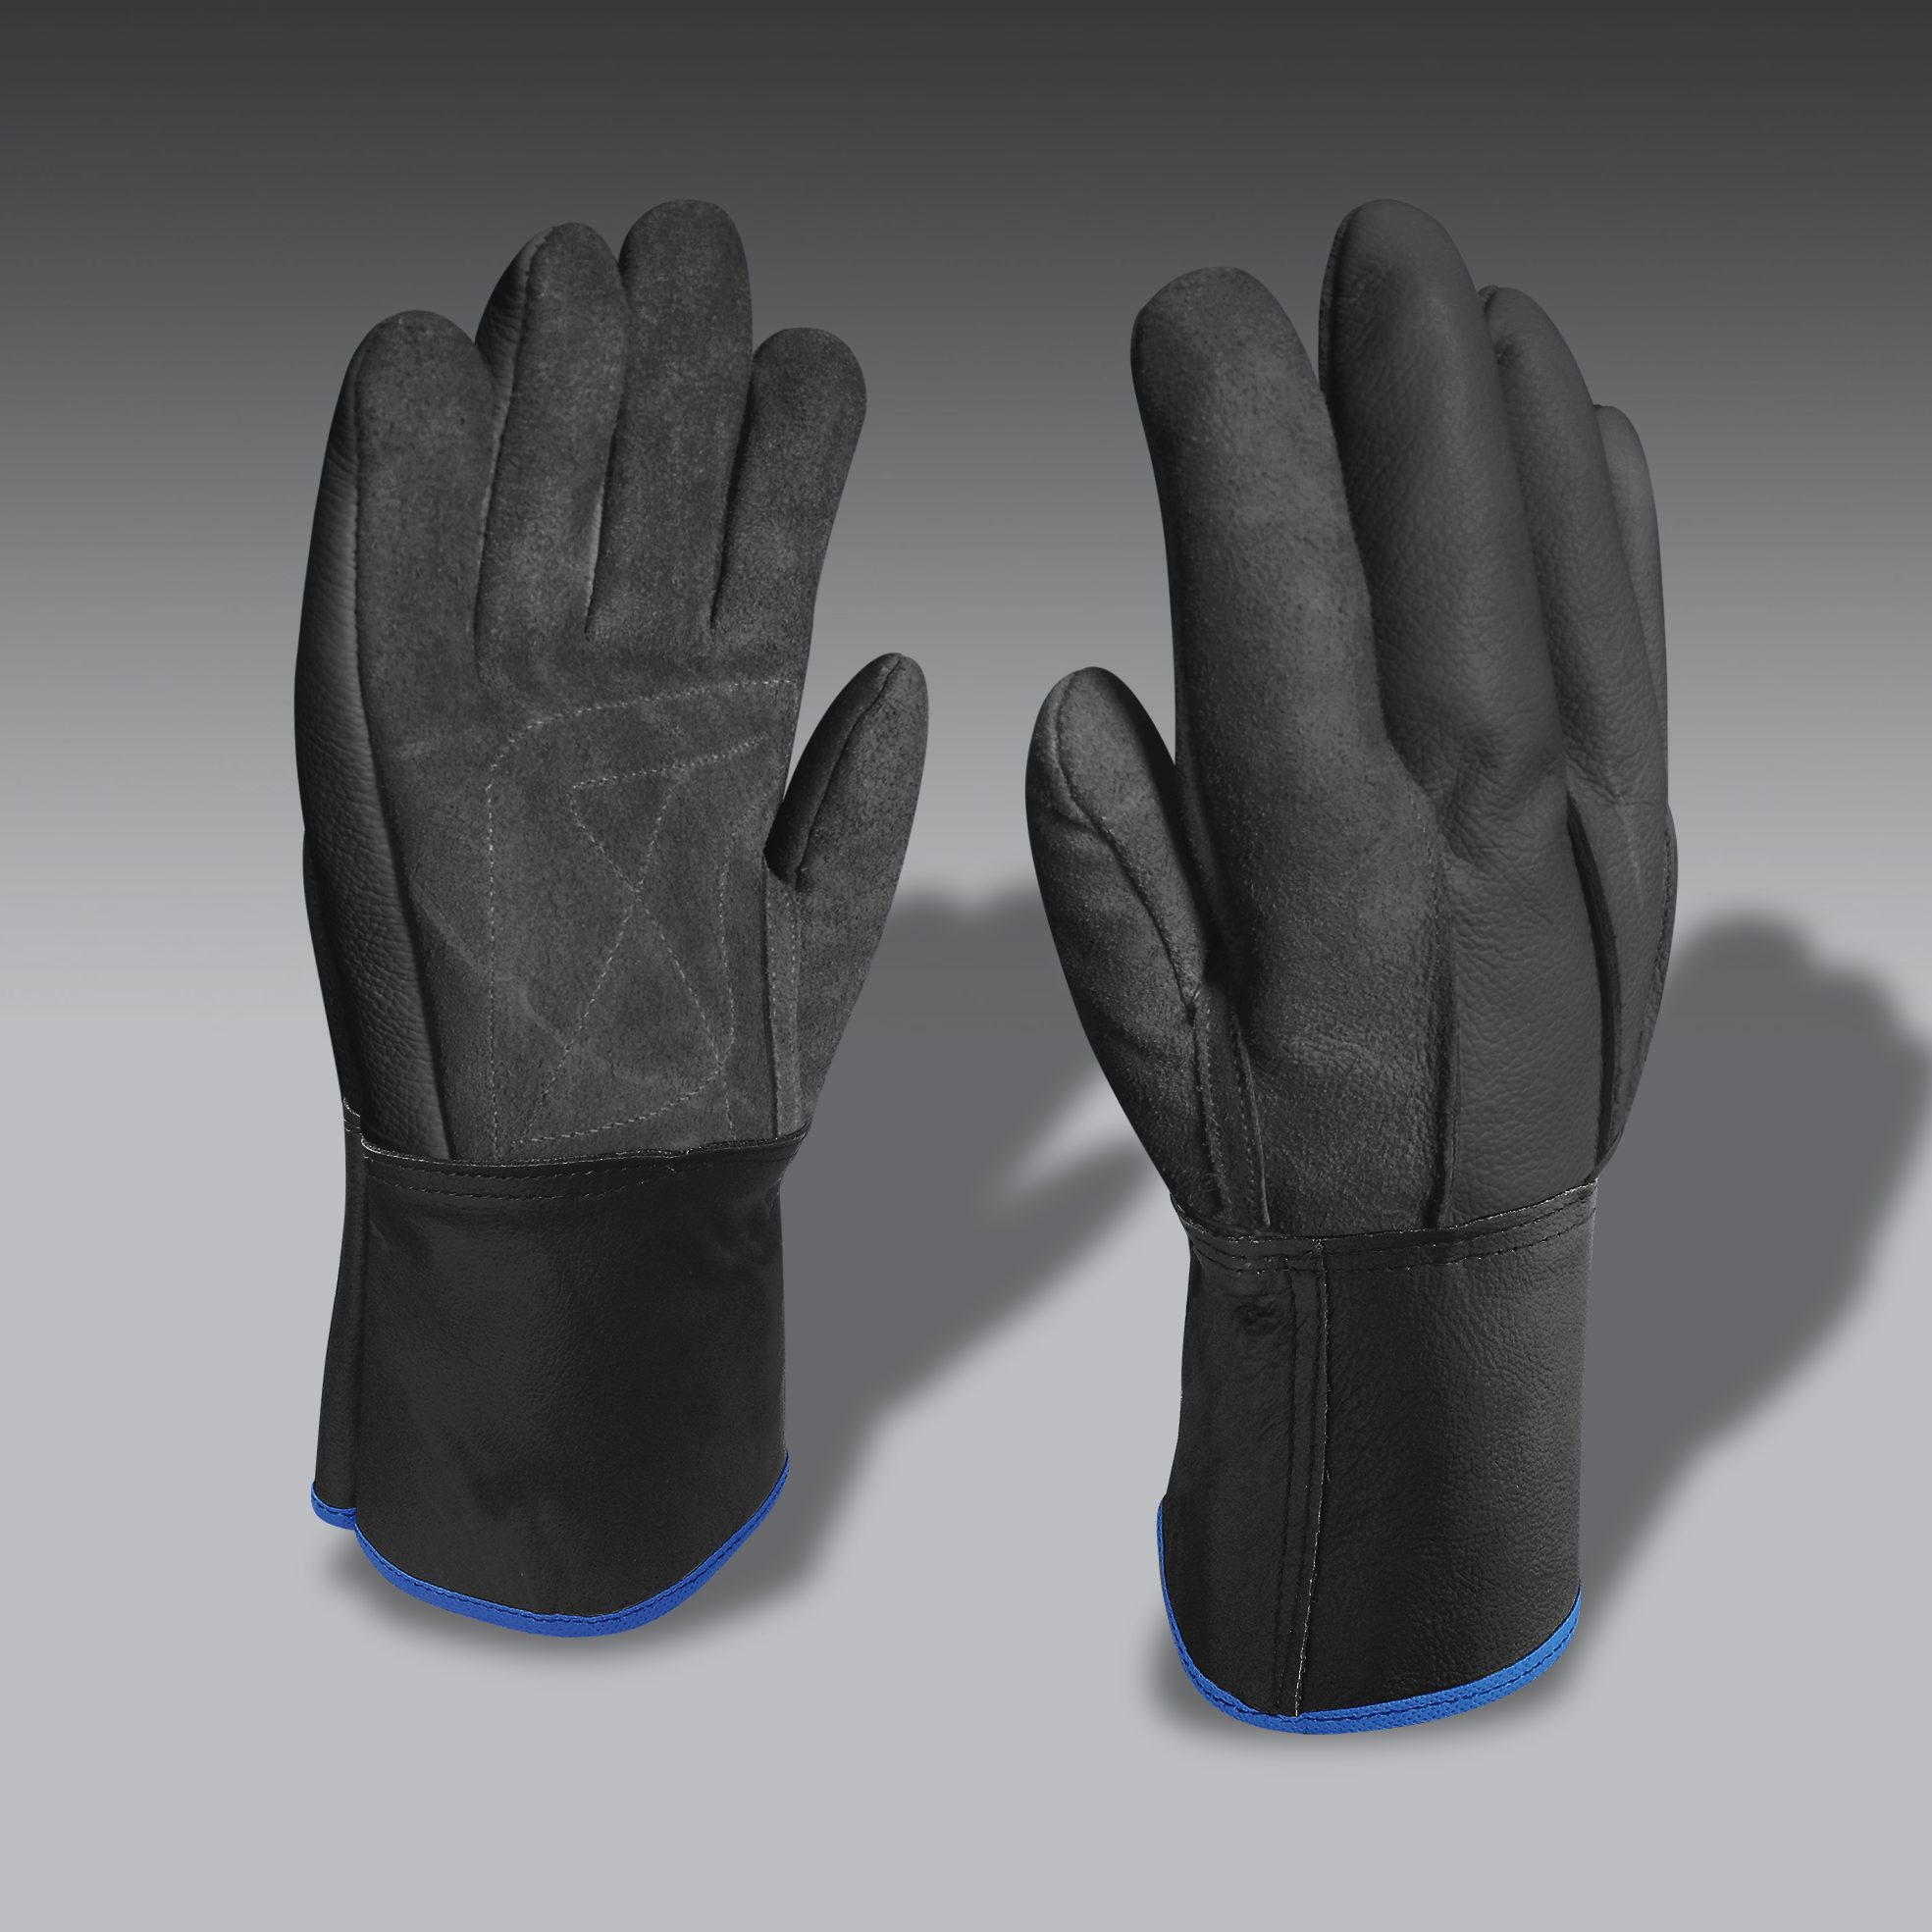 guantes para la seguridad industrial modelo CarEco 04 guantes de seguridad industrial modelo CarEco 04